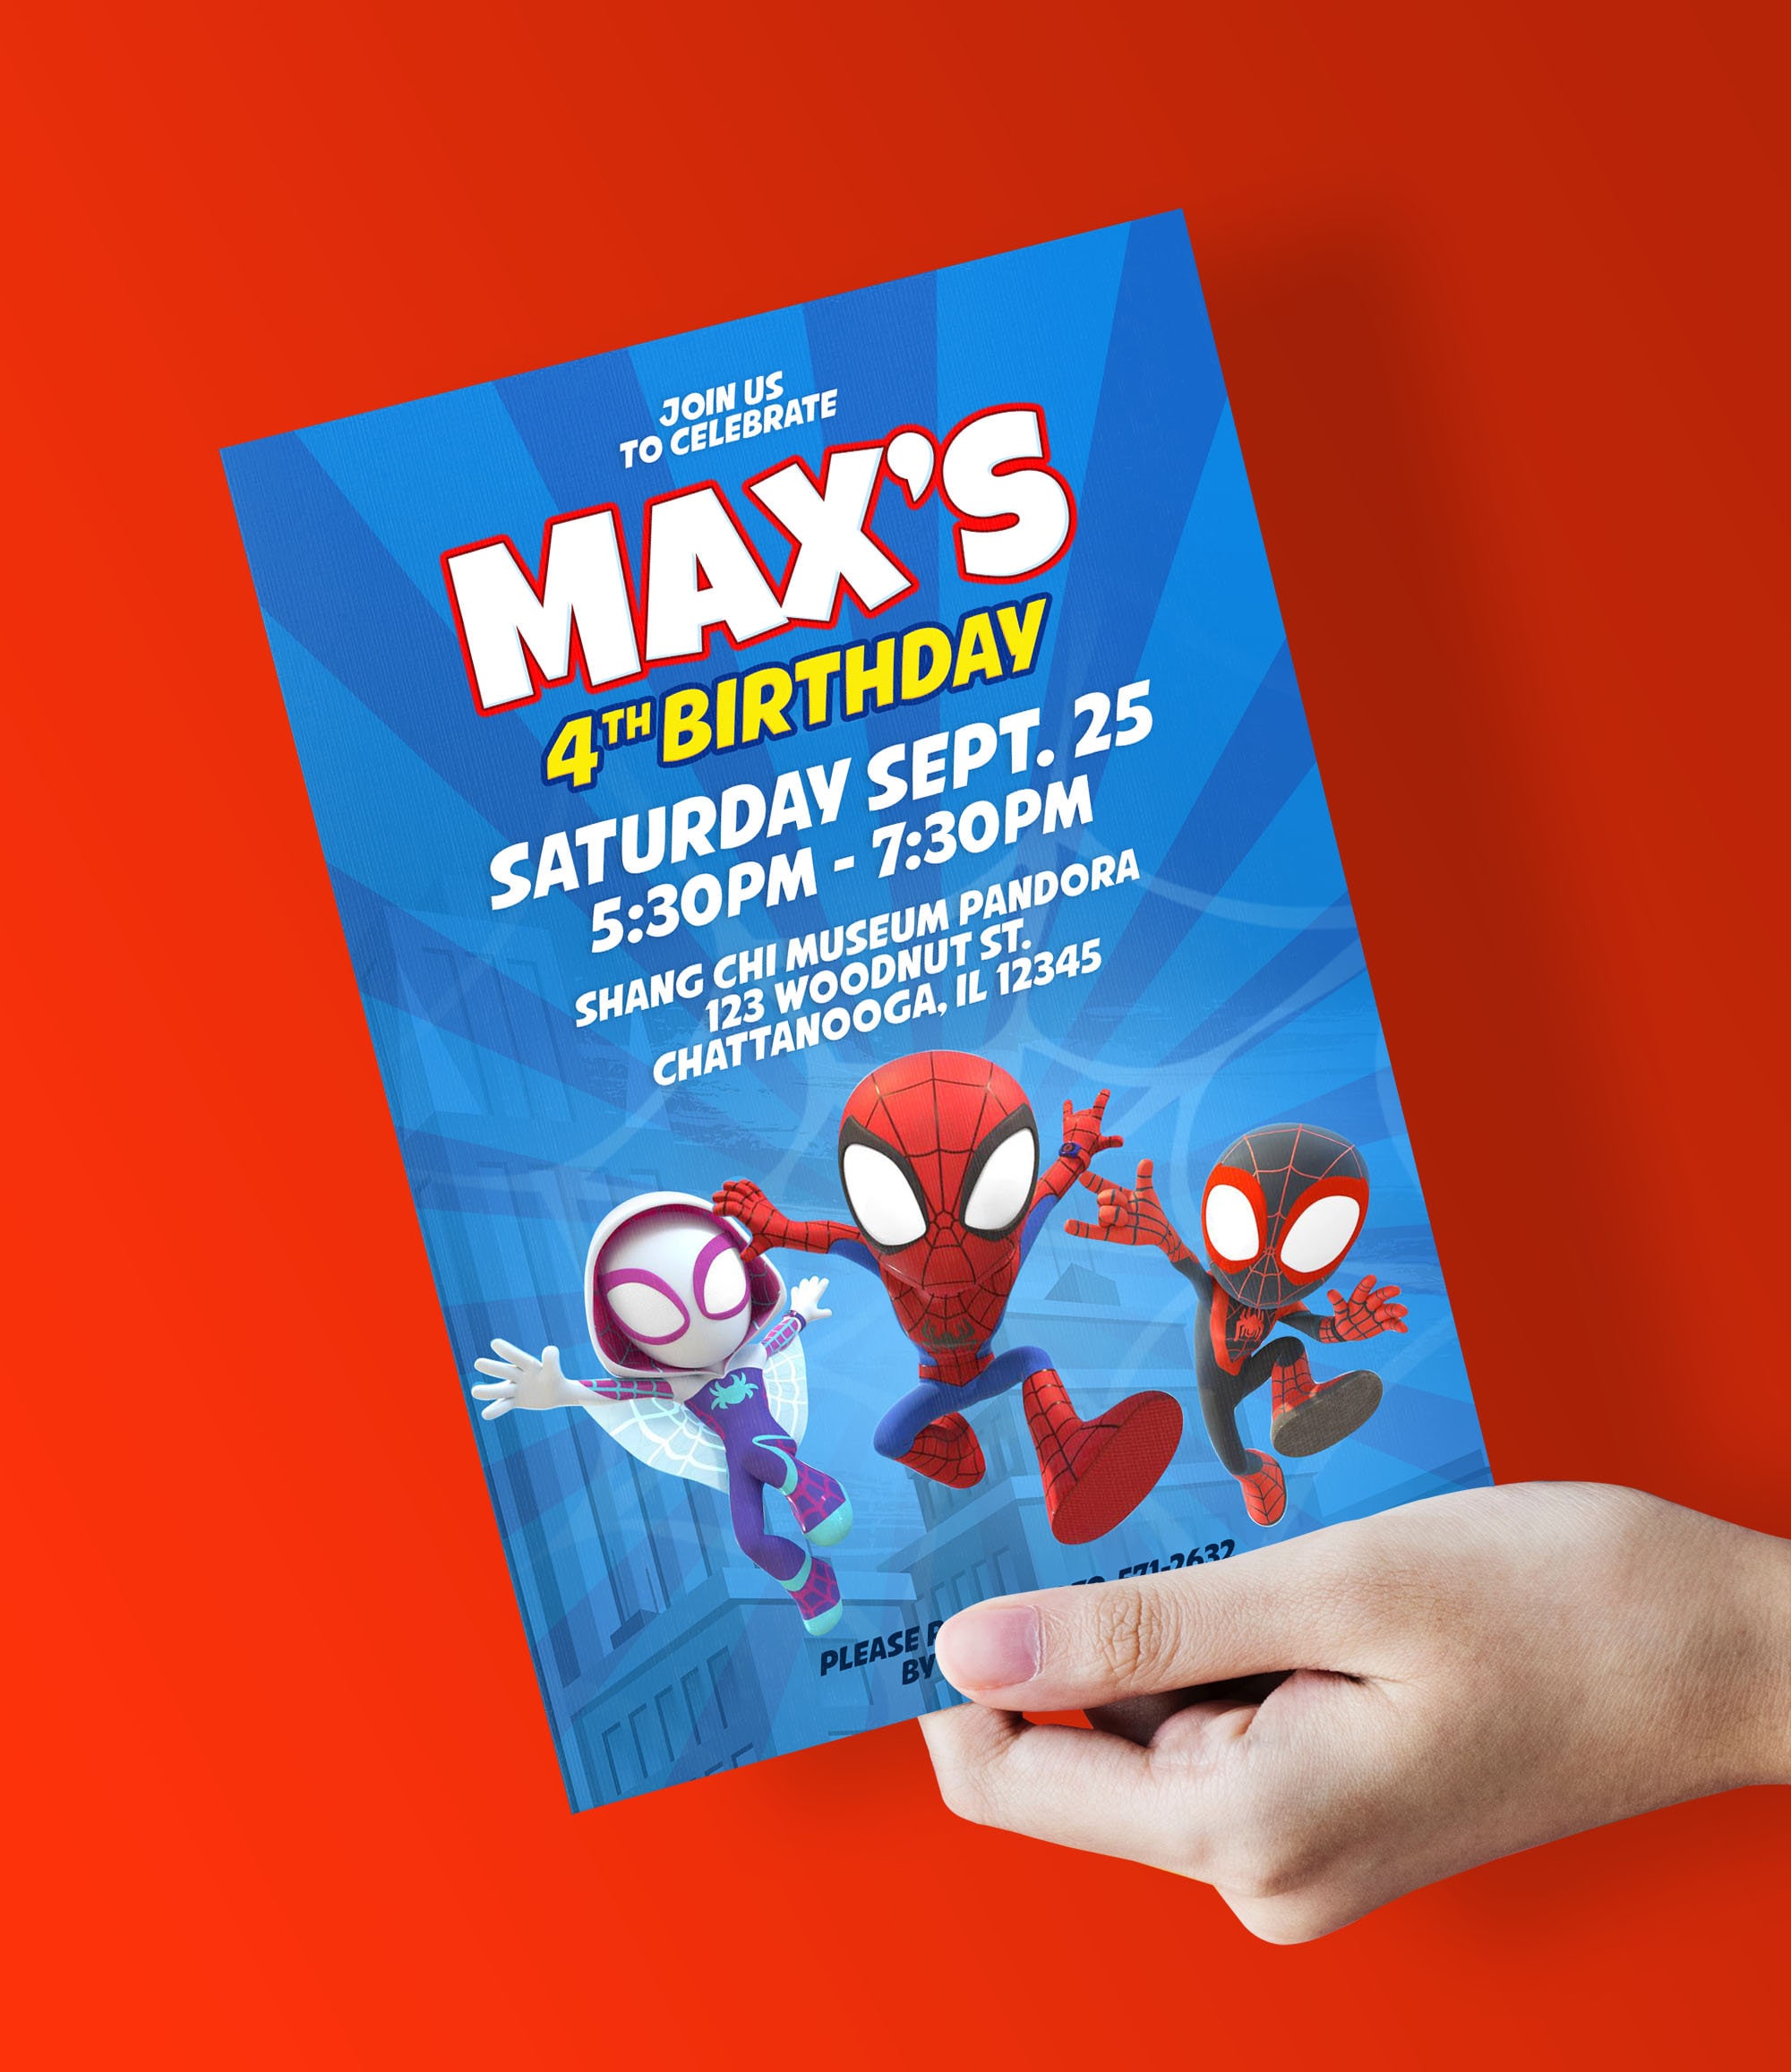 Invitación de cumpleaños Spiderman x 10 unidades - VeoVeo Juguetería -  Tienda online